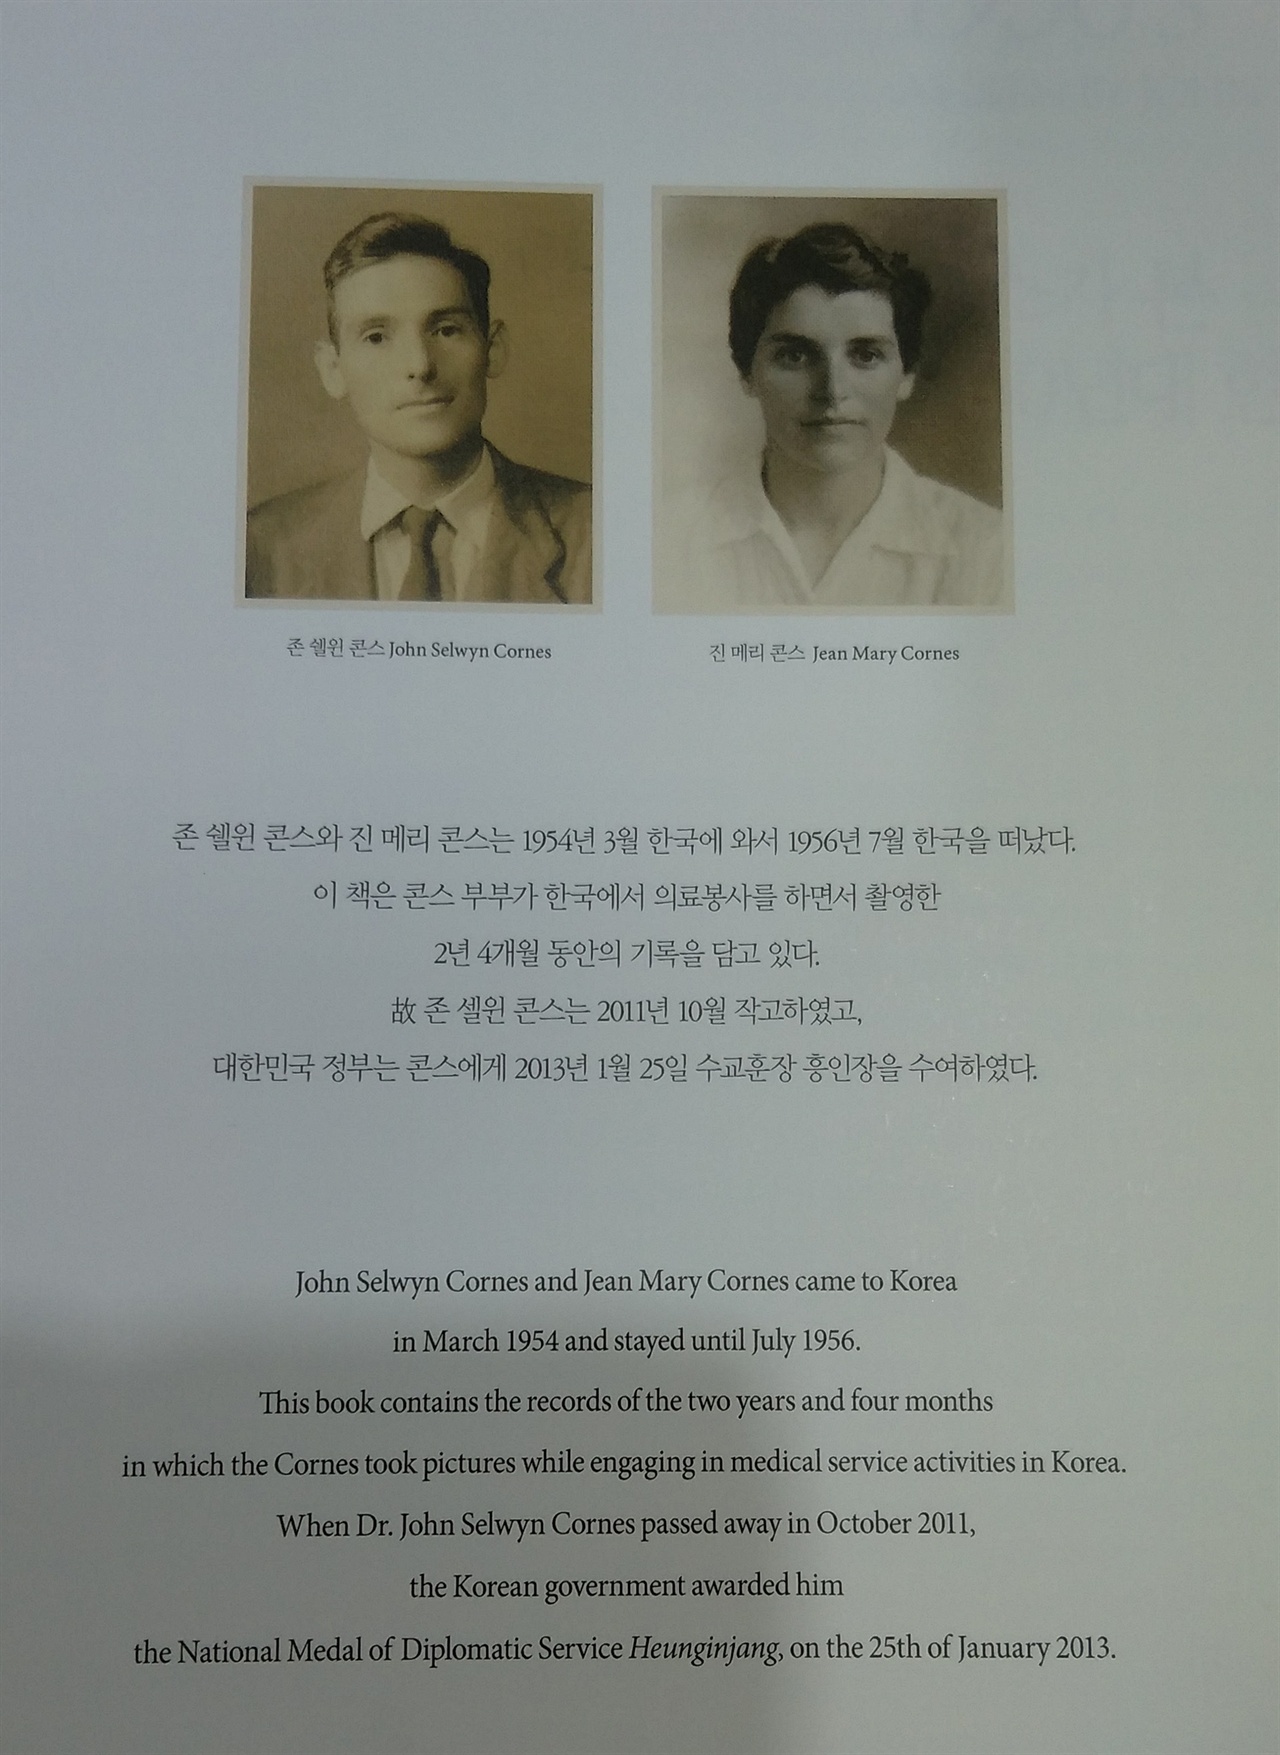 서울역사박물관에 비치된 콘스씨의 사진집 <콘스가 본 1950년대 한국> 속 존 콘스와 부인 진 메리.